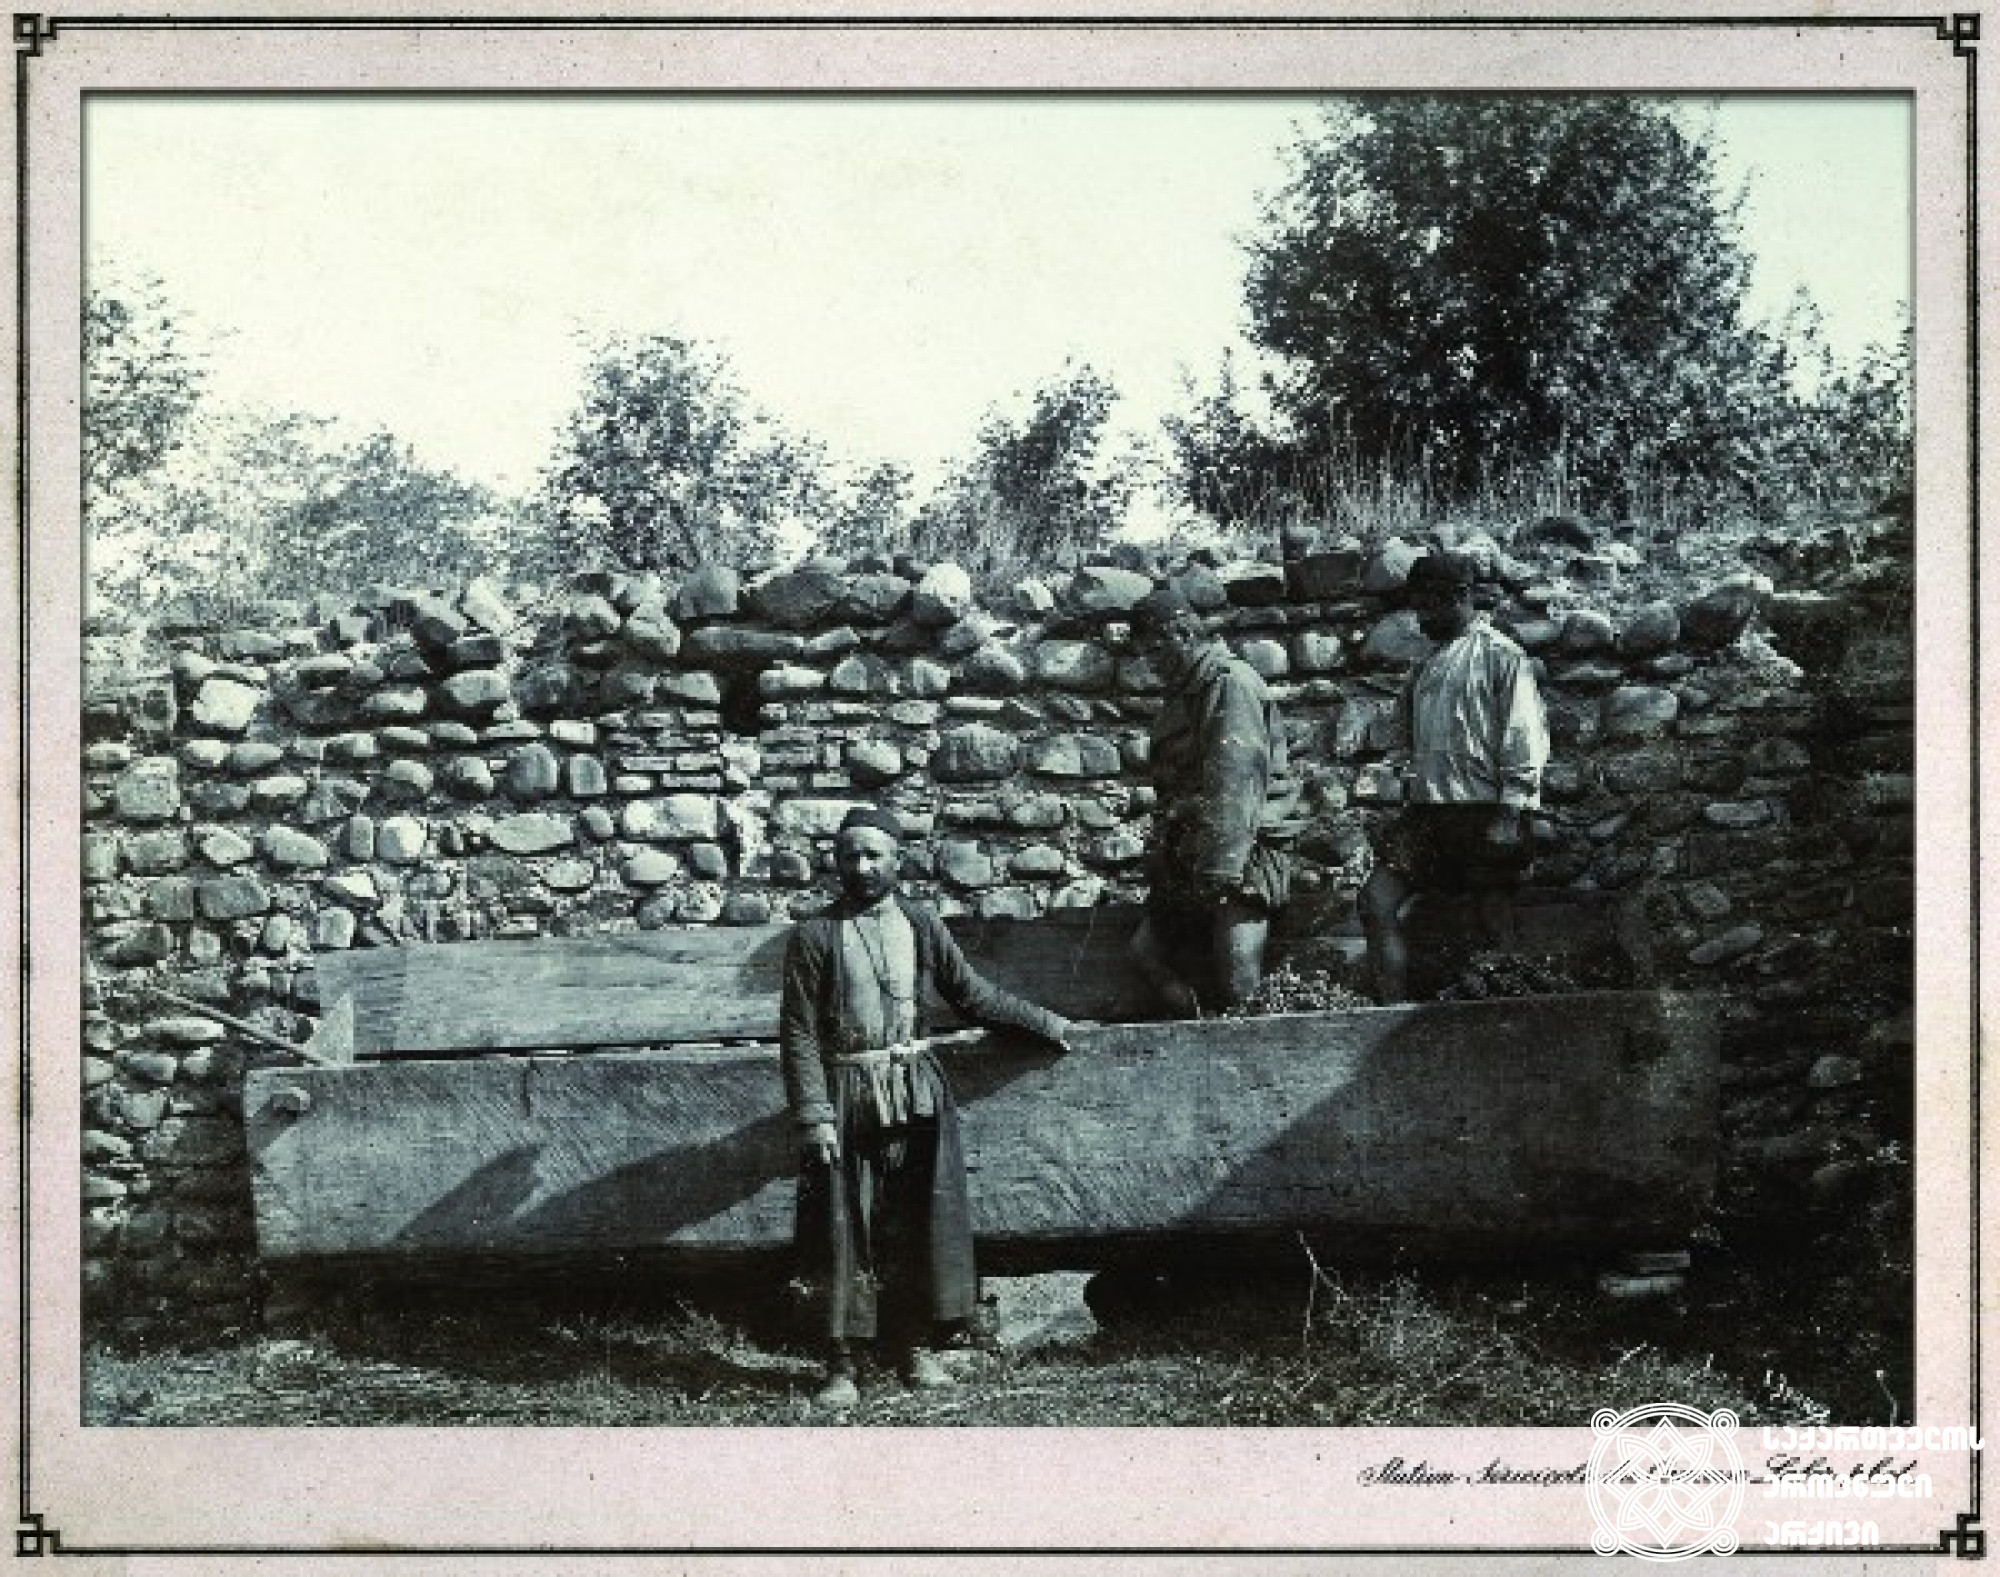 ყურძნის დაწურვა საწნახელში <br>
კახეთი, 1900-1905 წლები <br>
ფოტო: კონსტანტინე ზანისი <br>
Press out of grapes in winepress<br>
Kakheti, 1900-1905 <br>
Photo by Konstantin Zanis